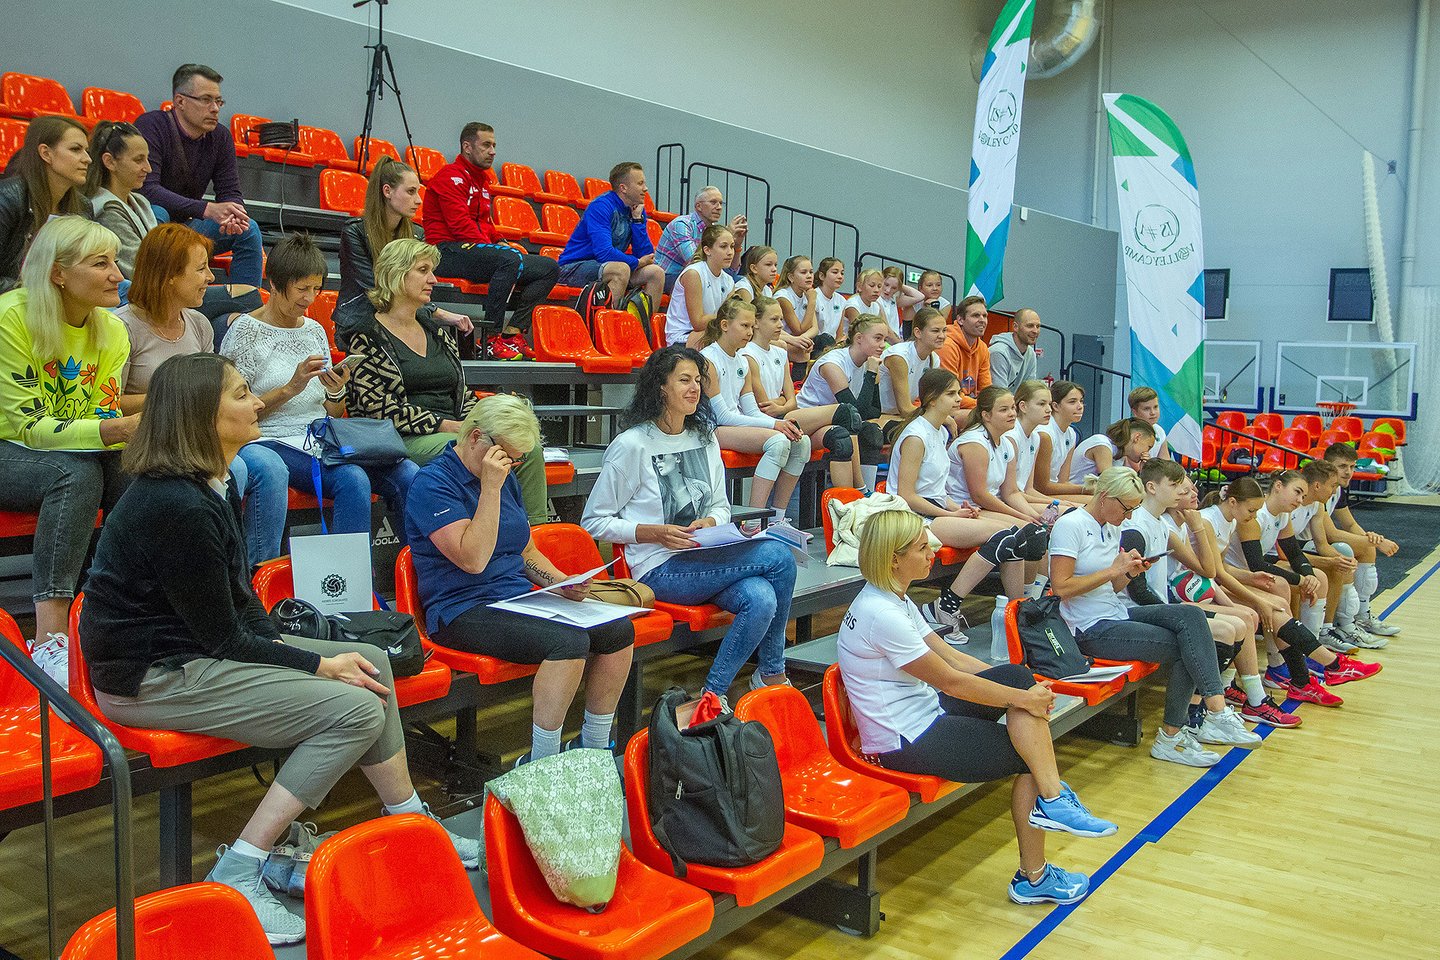 Nuo liepos 25 d. startuos ir antroji ISTA vasaros tinklinio stovykla, į kurią kviečiami ne tik I.Sorokaitės akademijos auklėtiniai, bet ir jaunieji tinklininkai iś visos Lietuvos.